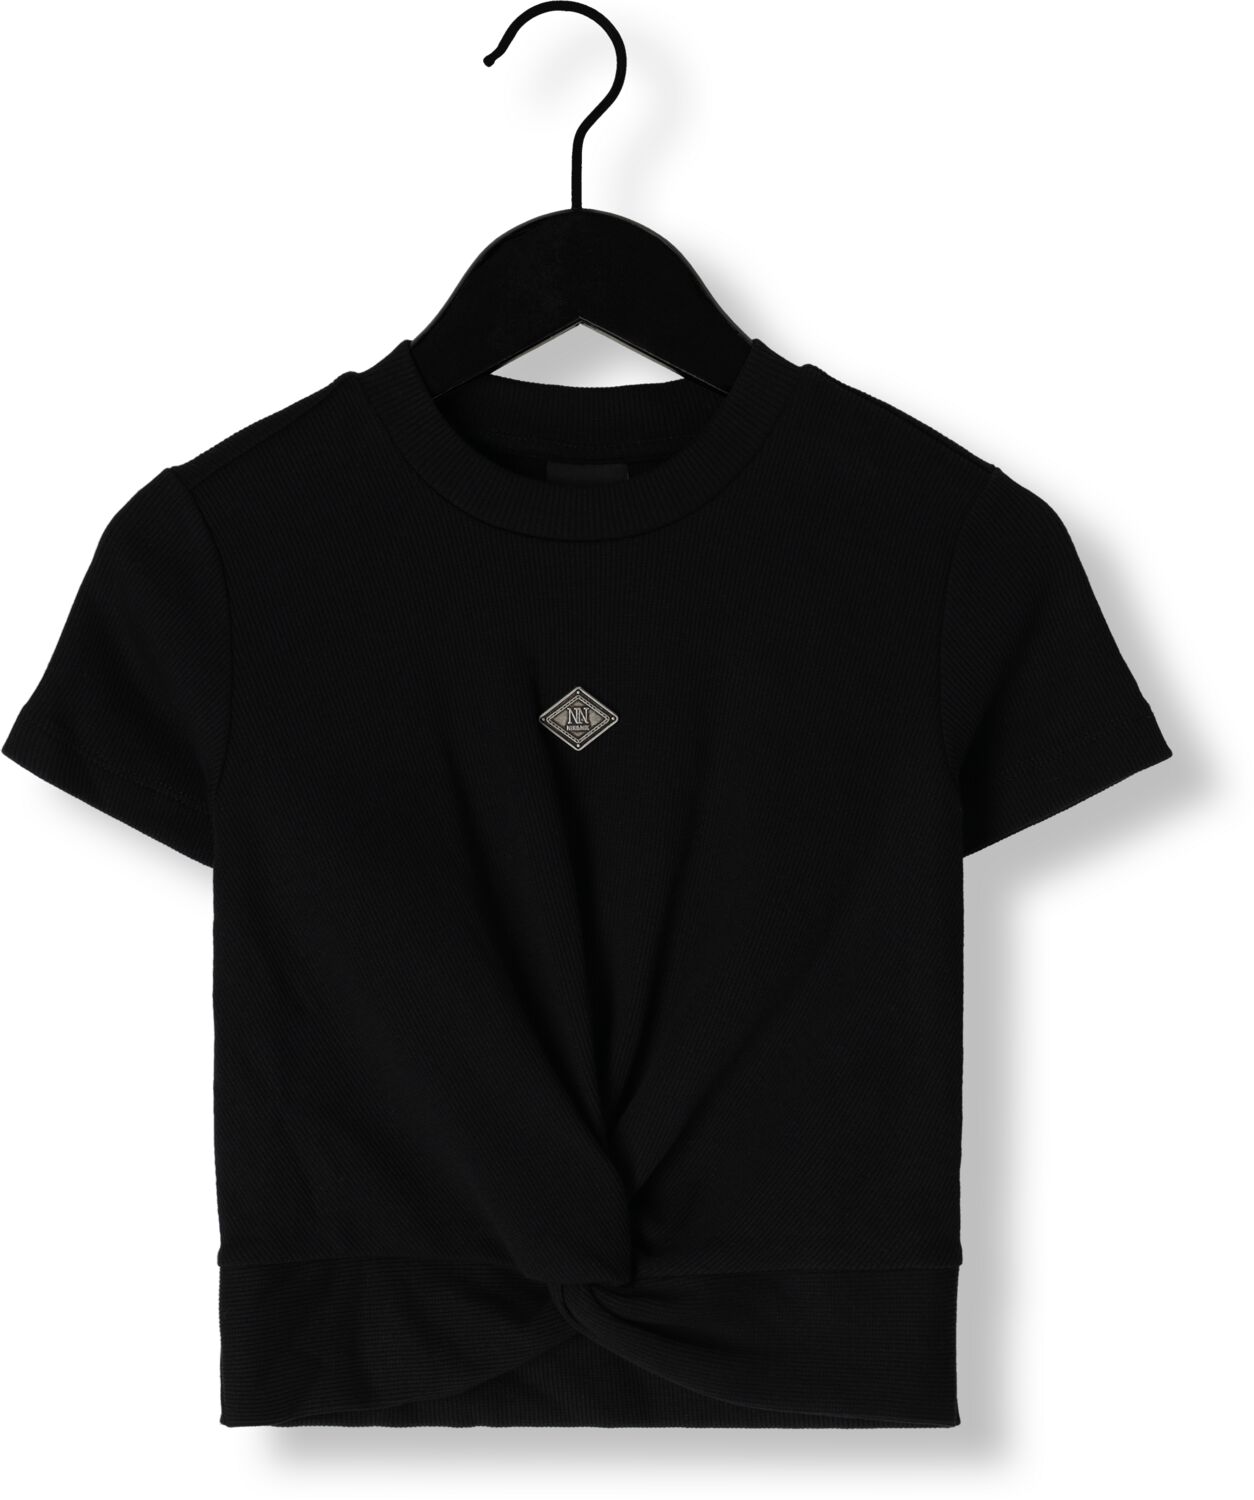 NIK & NIK Meisjes Tops & T-shirts Knot Rib T-shirt Zwart